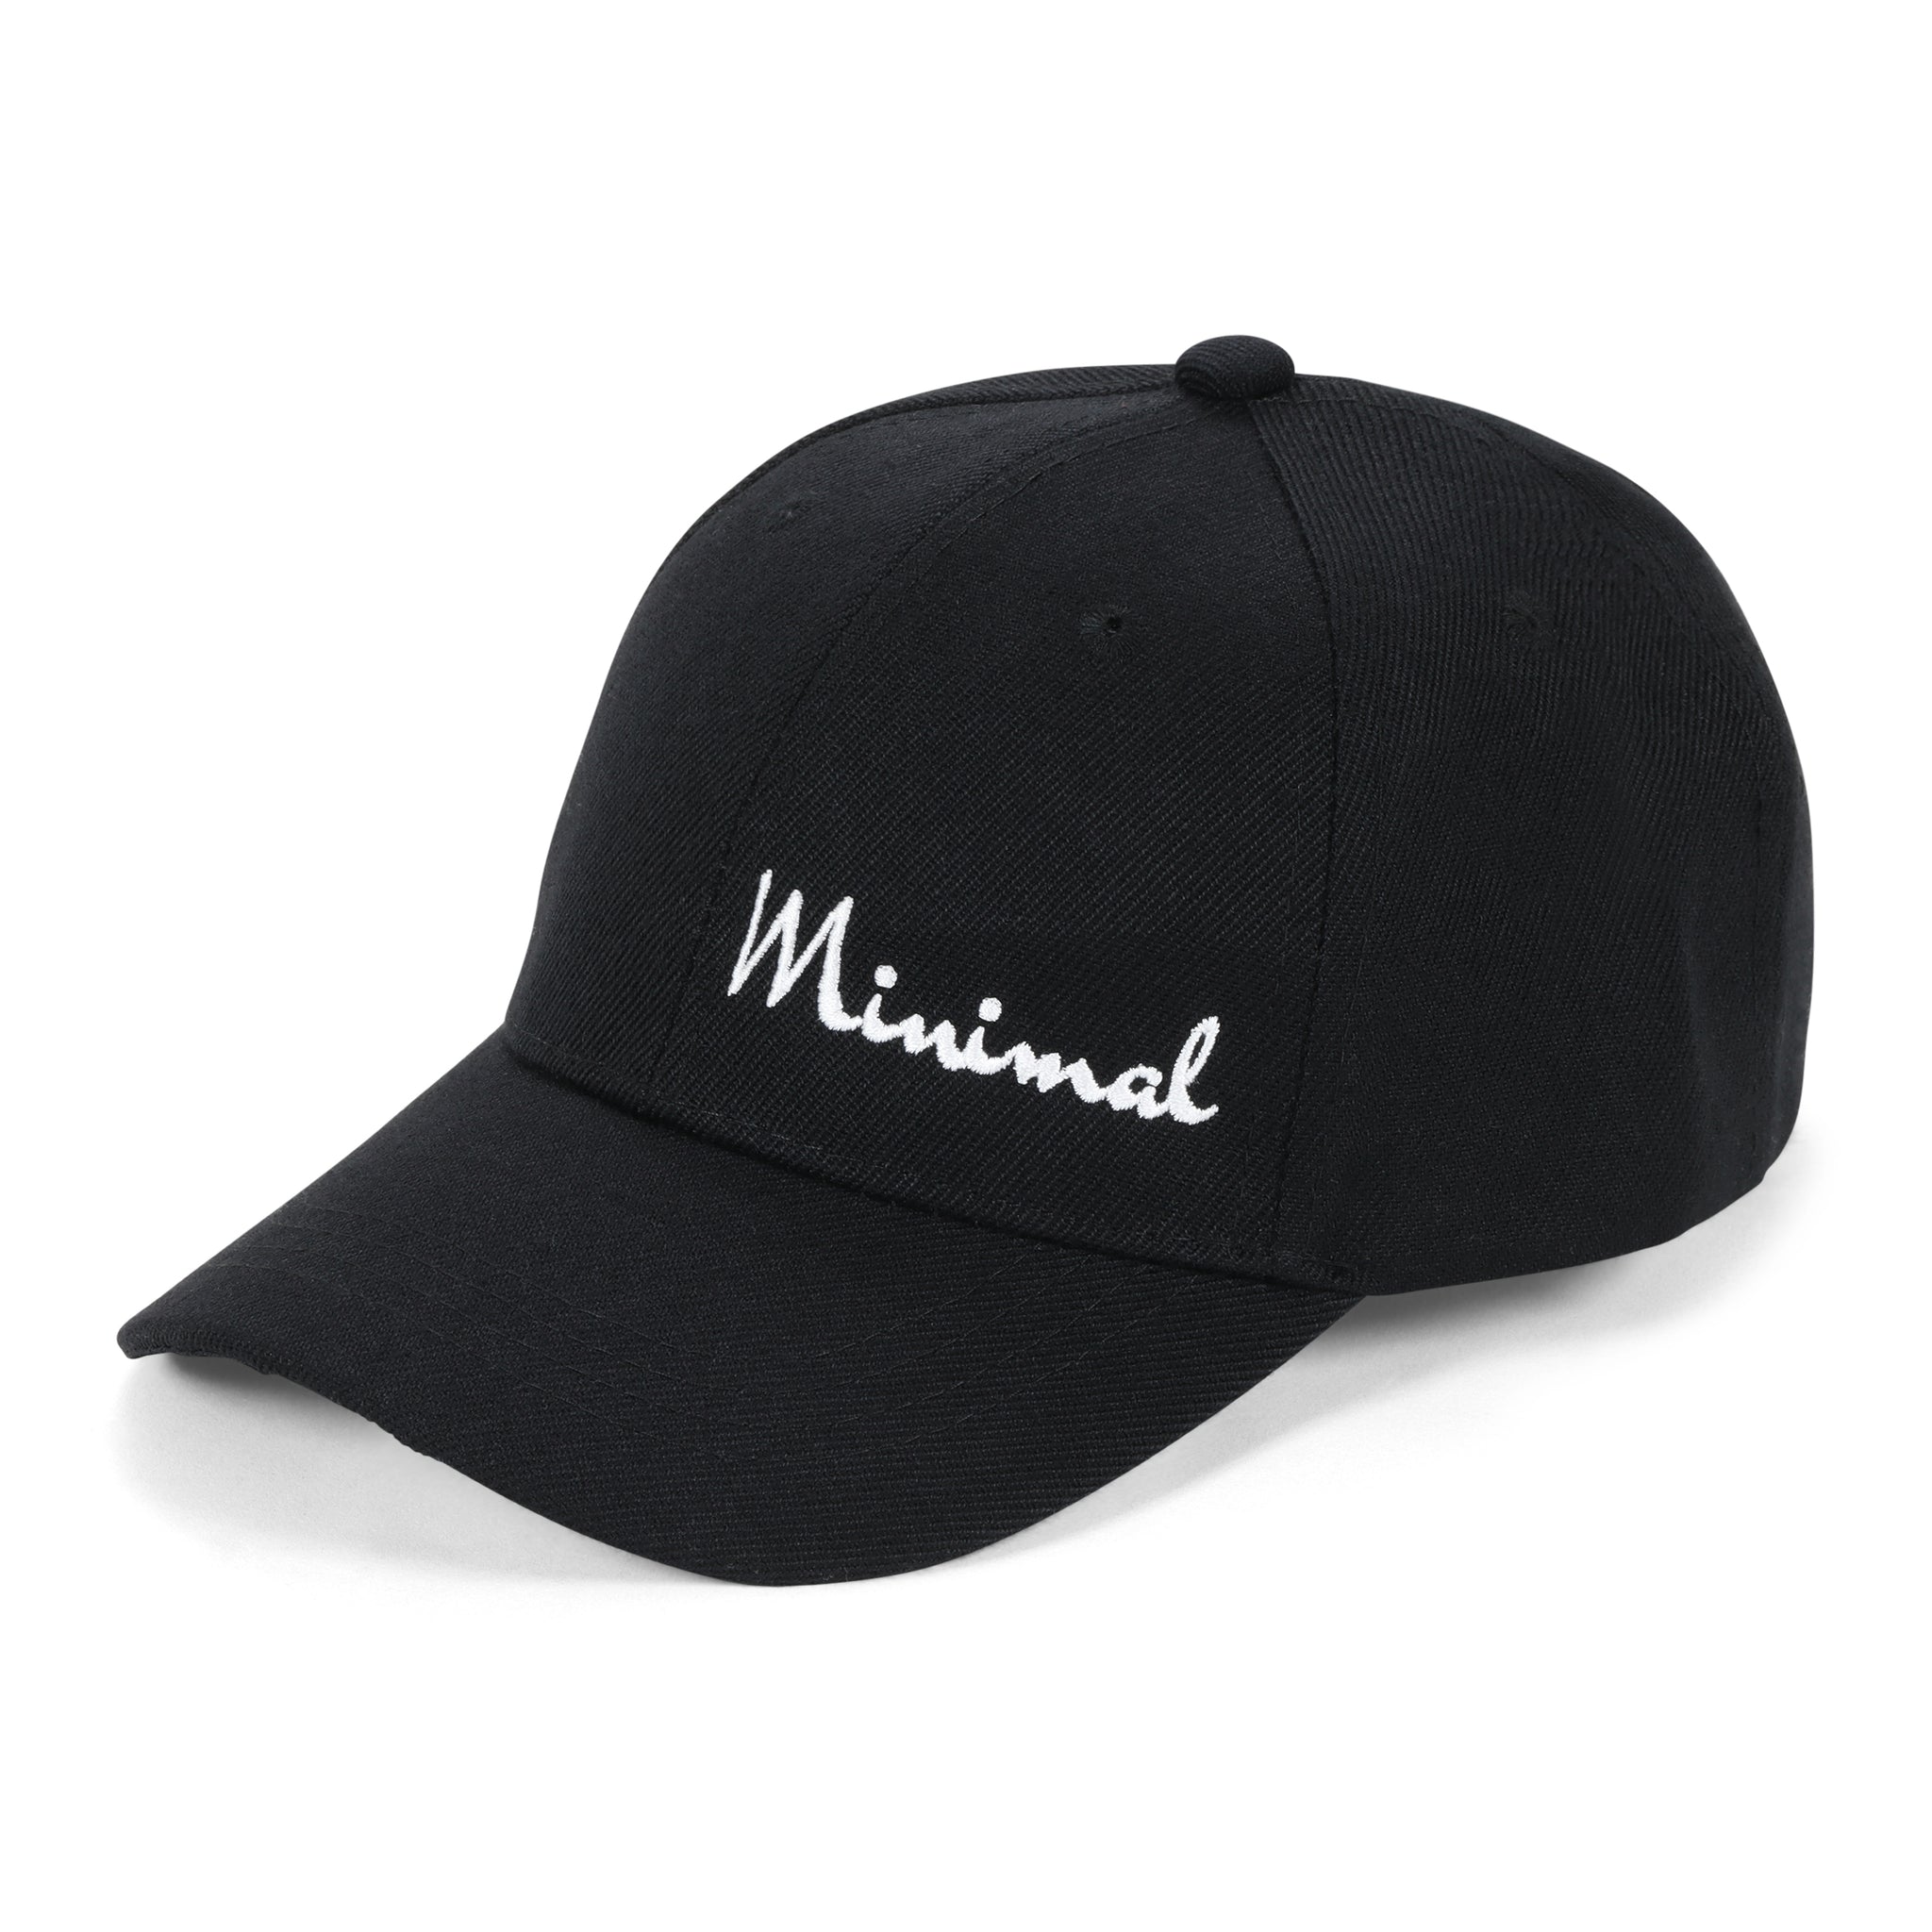 The Minimal Classic Premium Hat